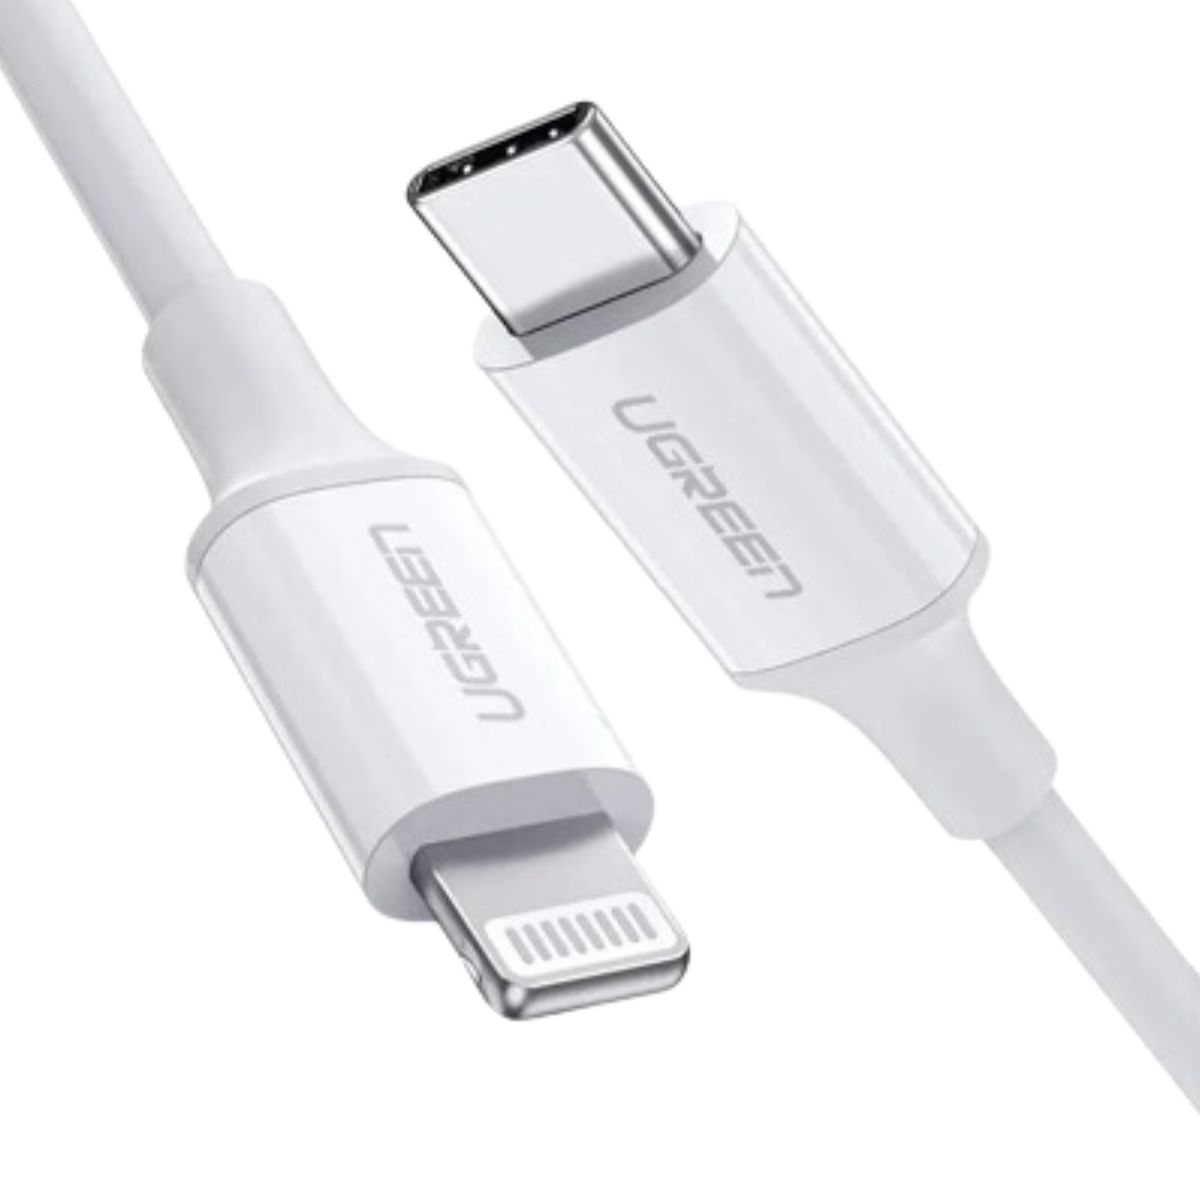 Cáp sạc nhanh USB-C sang Lightning Ugreen 60748 US171 chiều dài 1.5m, màu trắng, vỏ ABS, sạc nhanh 3A